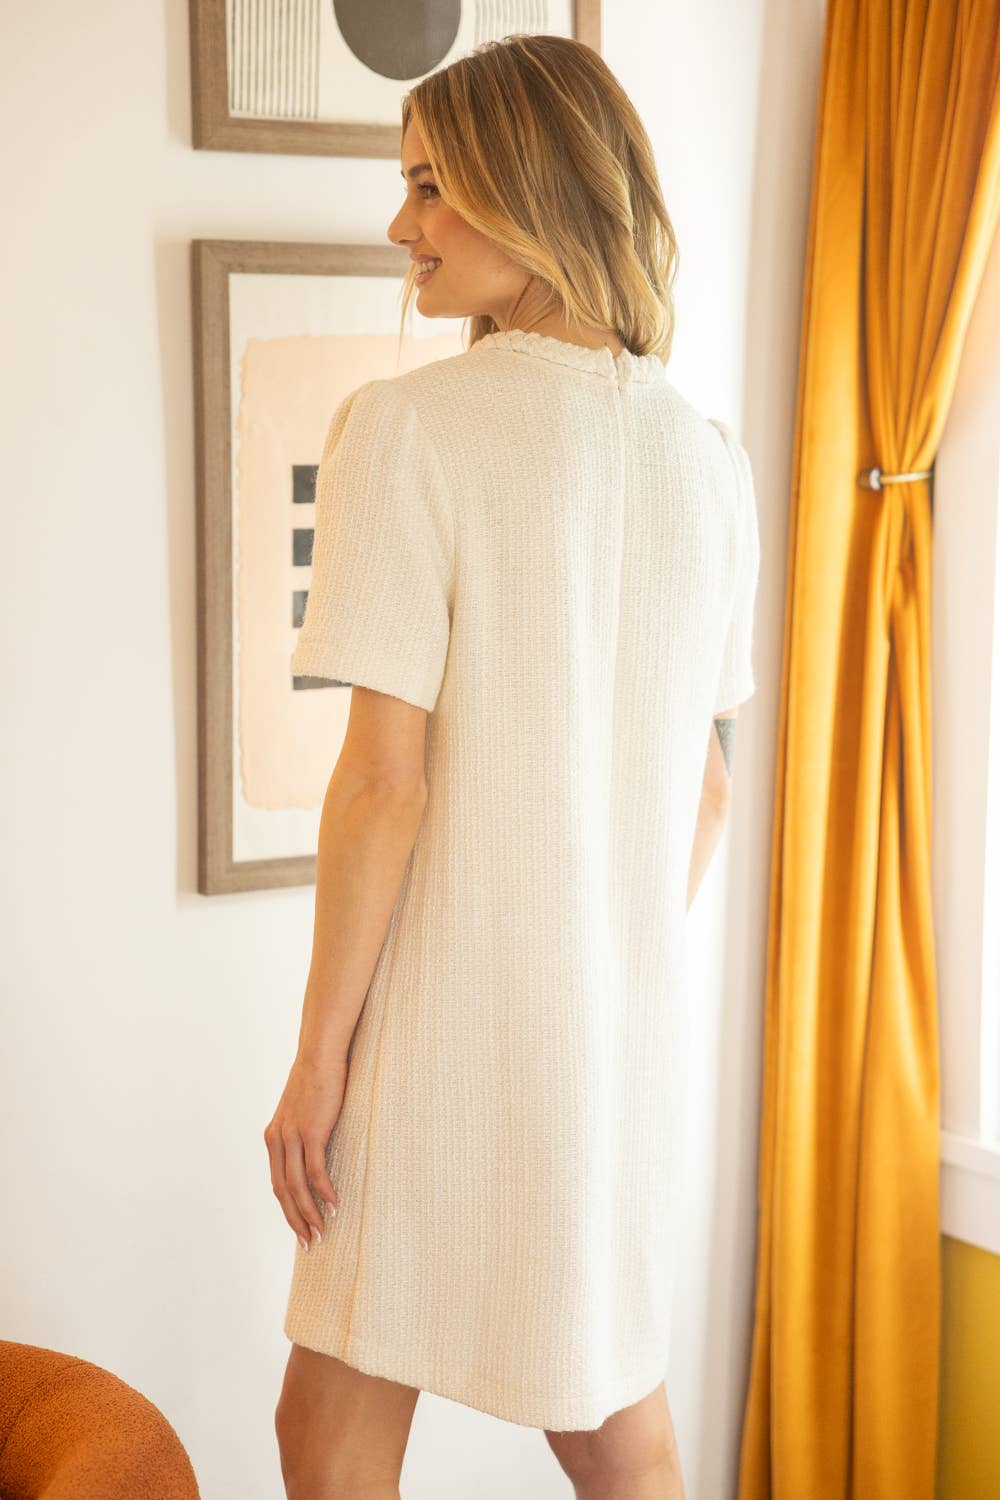 “JACKIE O” Tweed Dress - Ivory